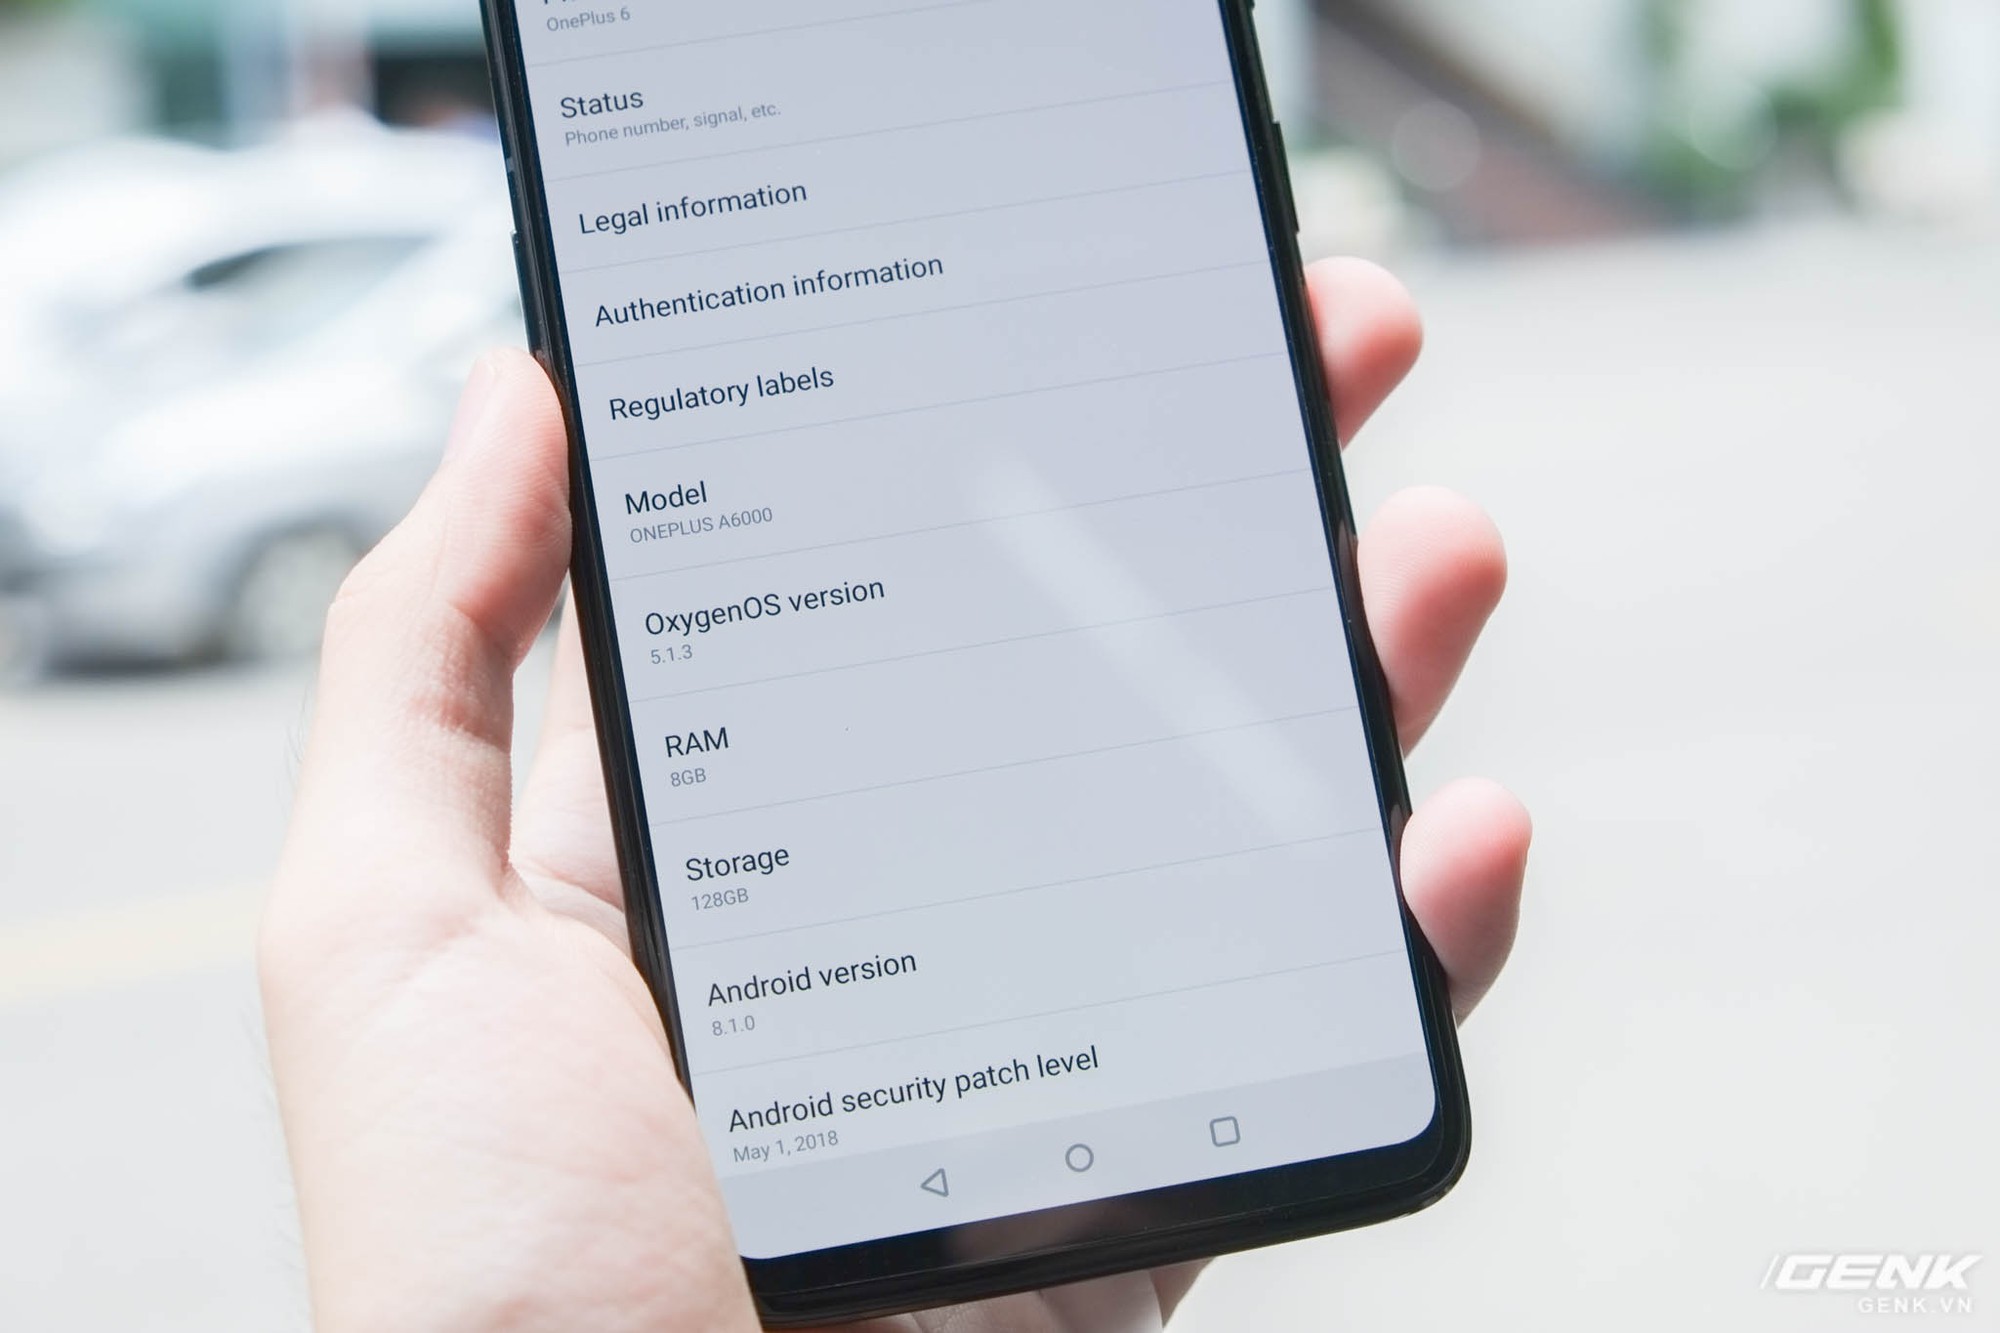 OnePlus 6 chạy OxygenOS 5 trên nền Android 8.1 và rất giống với Android thuần Google. Kết hợp với cấu hình mạnh (Snapdragon 845   6/8GB RAM), OnePlus 6 đem lại trải nghiệm rất mượt mà